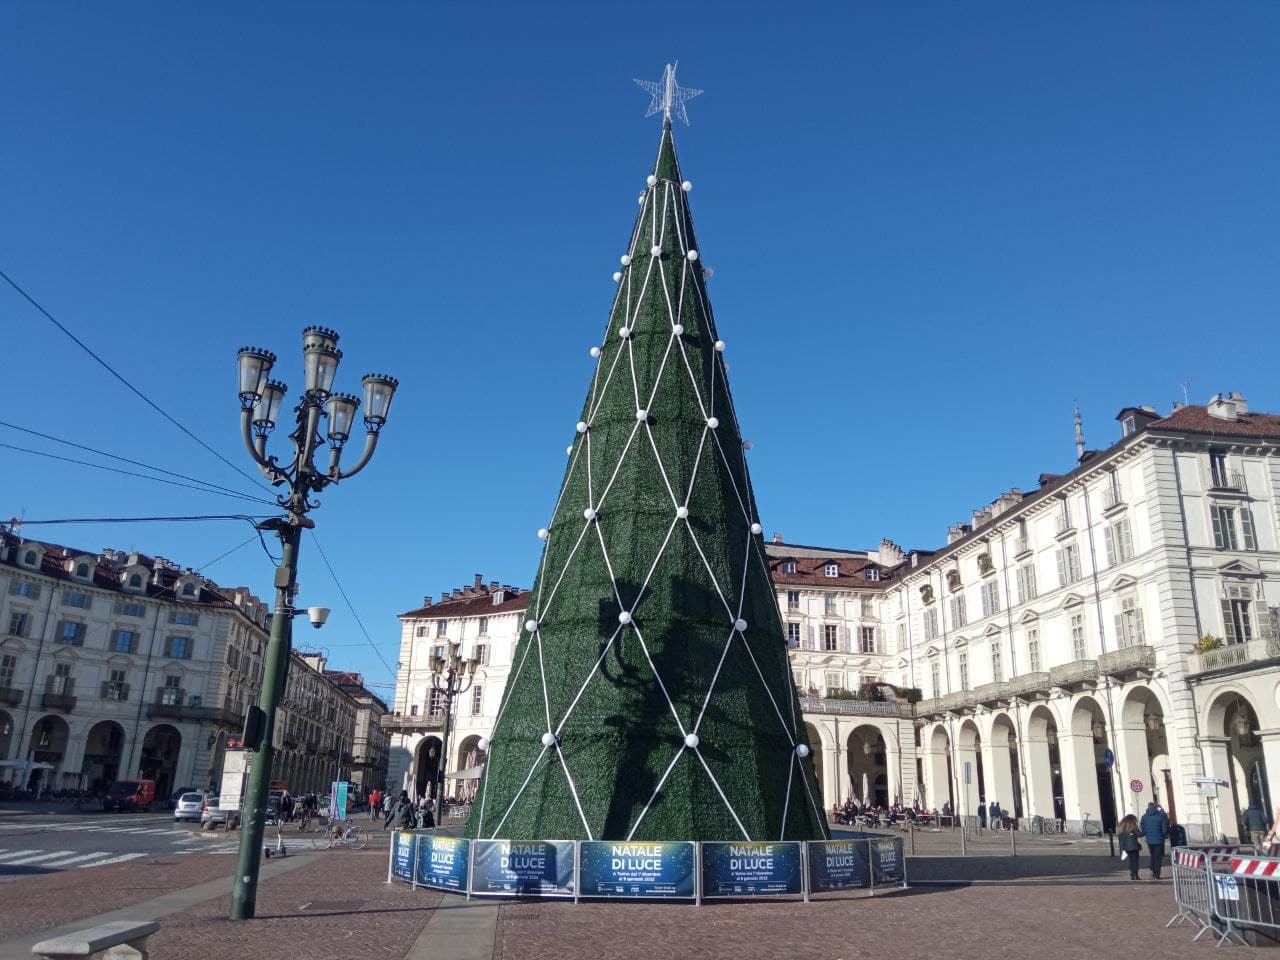 A Torino sono arrabbiati per l'albero di Natale: "Così brutto non s'era mai visto"